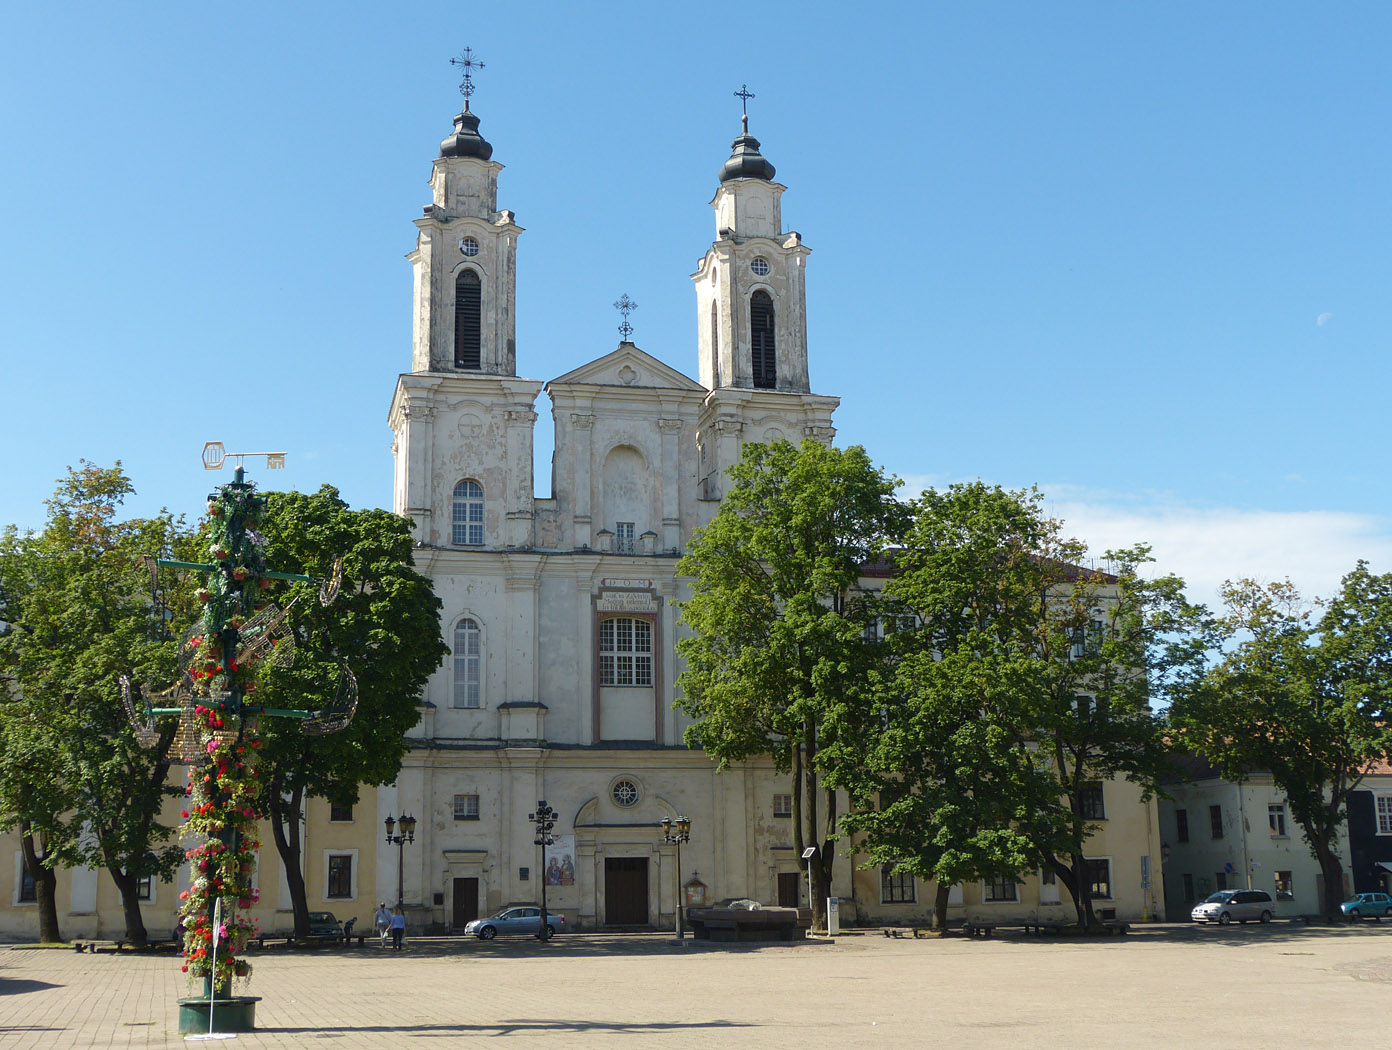 St Frances Church, Kaunas, Lithuania